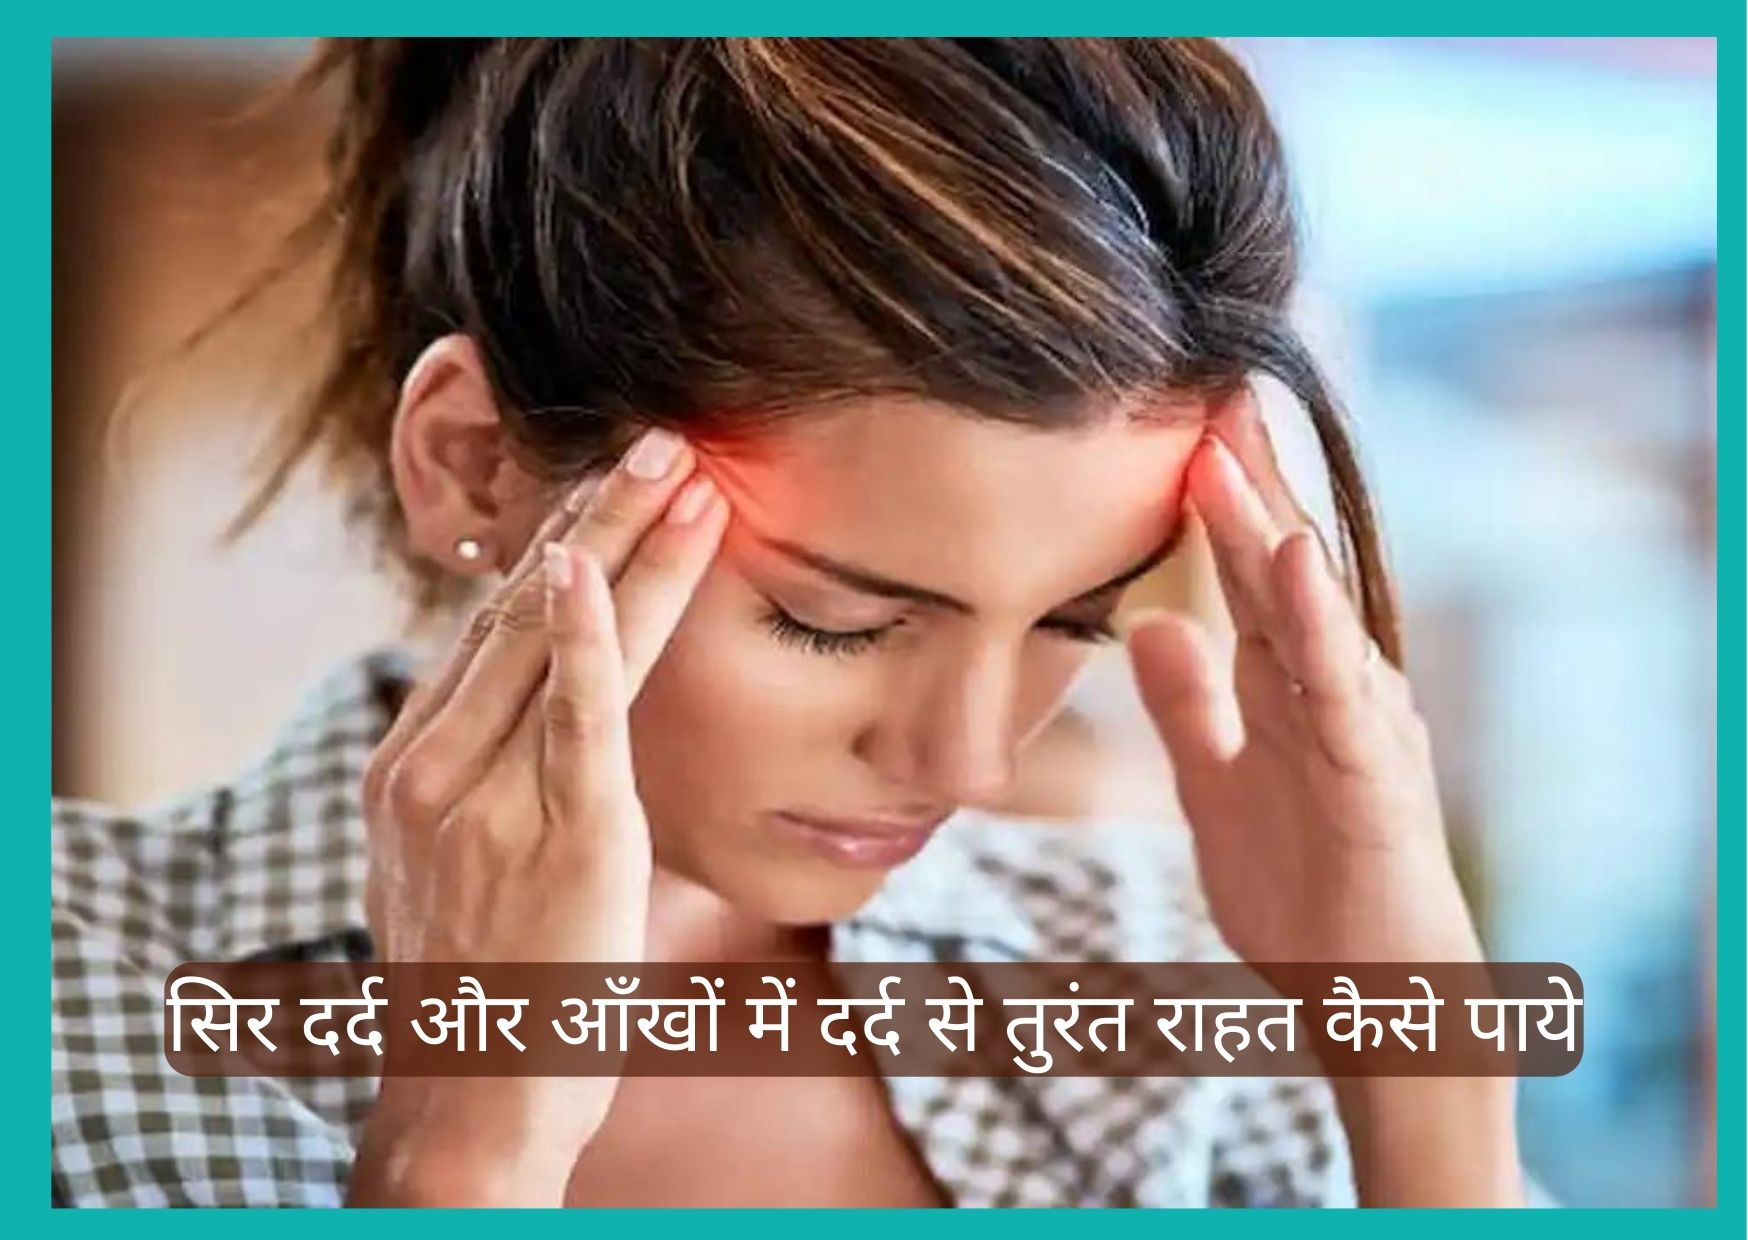 सिर दर्द और आँखों में दर्द के कारण: 6 घरेलू नुस्खे और उपचार